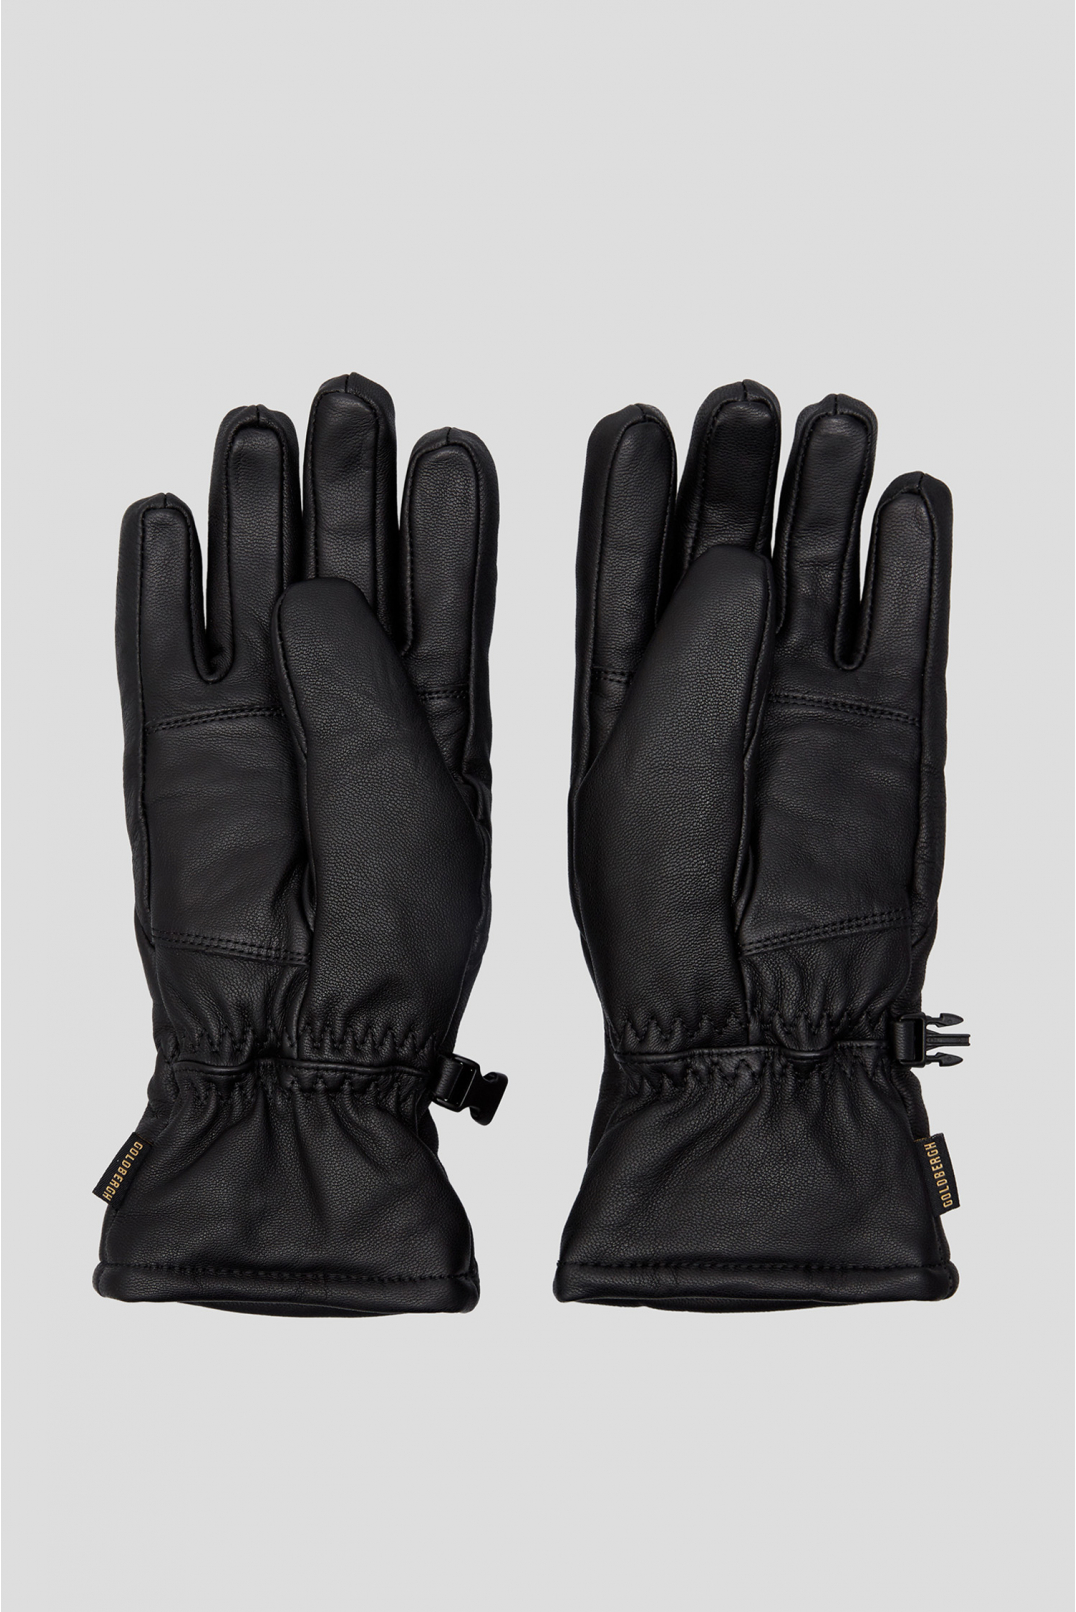 Жіночі чорні шкіряні лижні рукавички  - 2